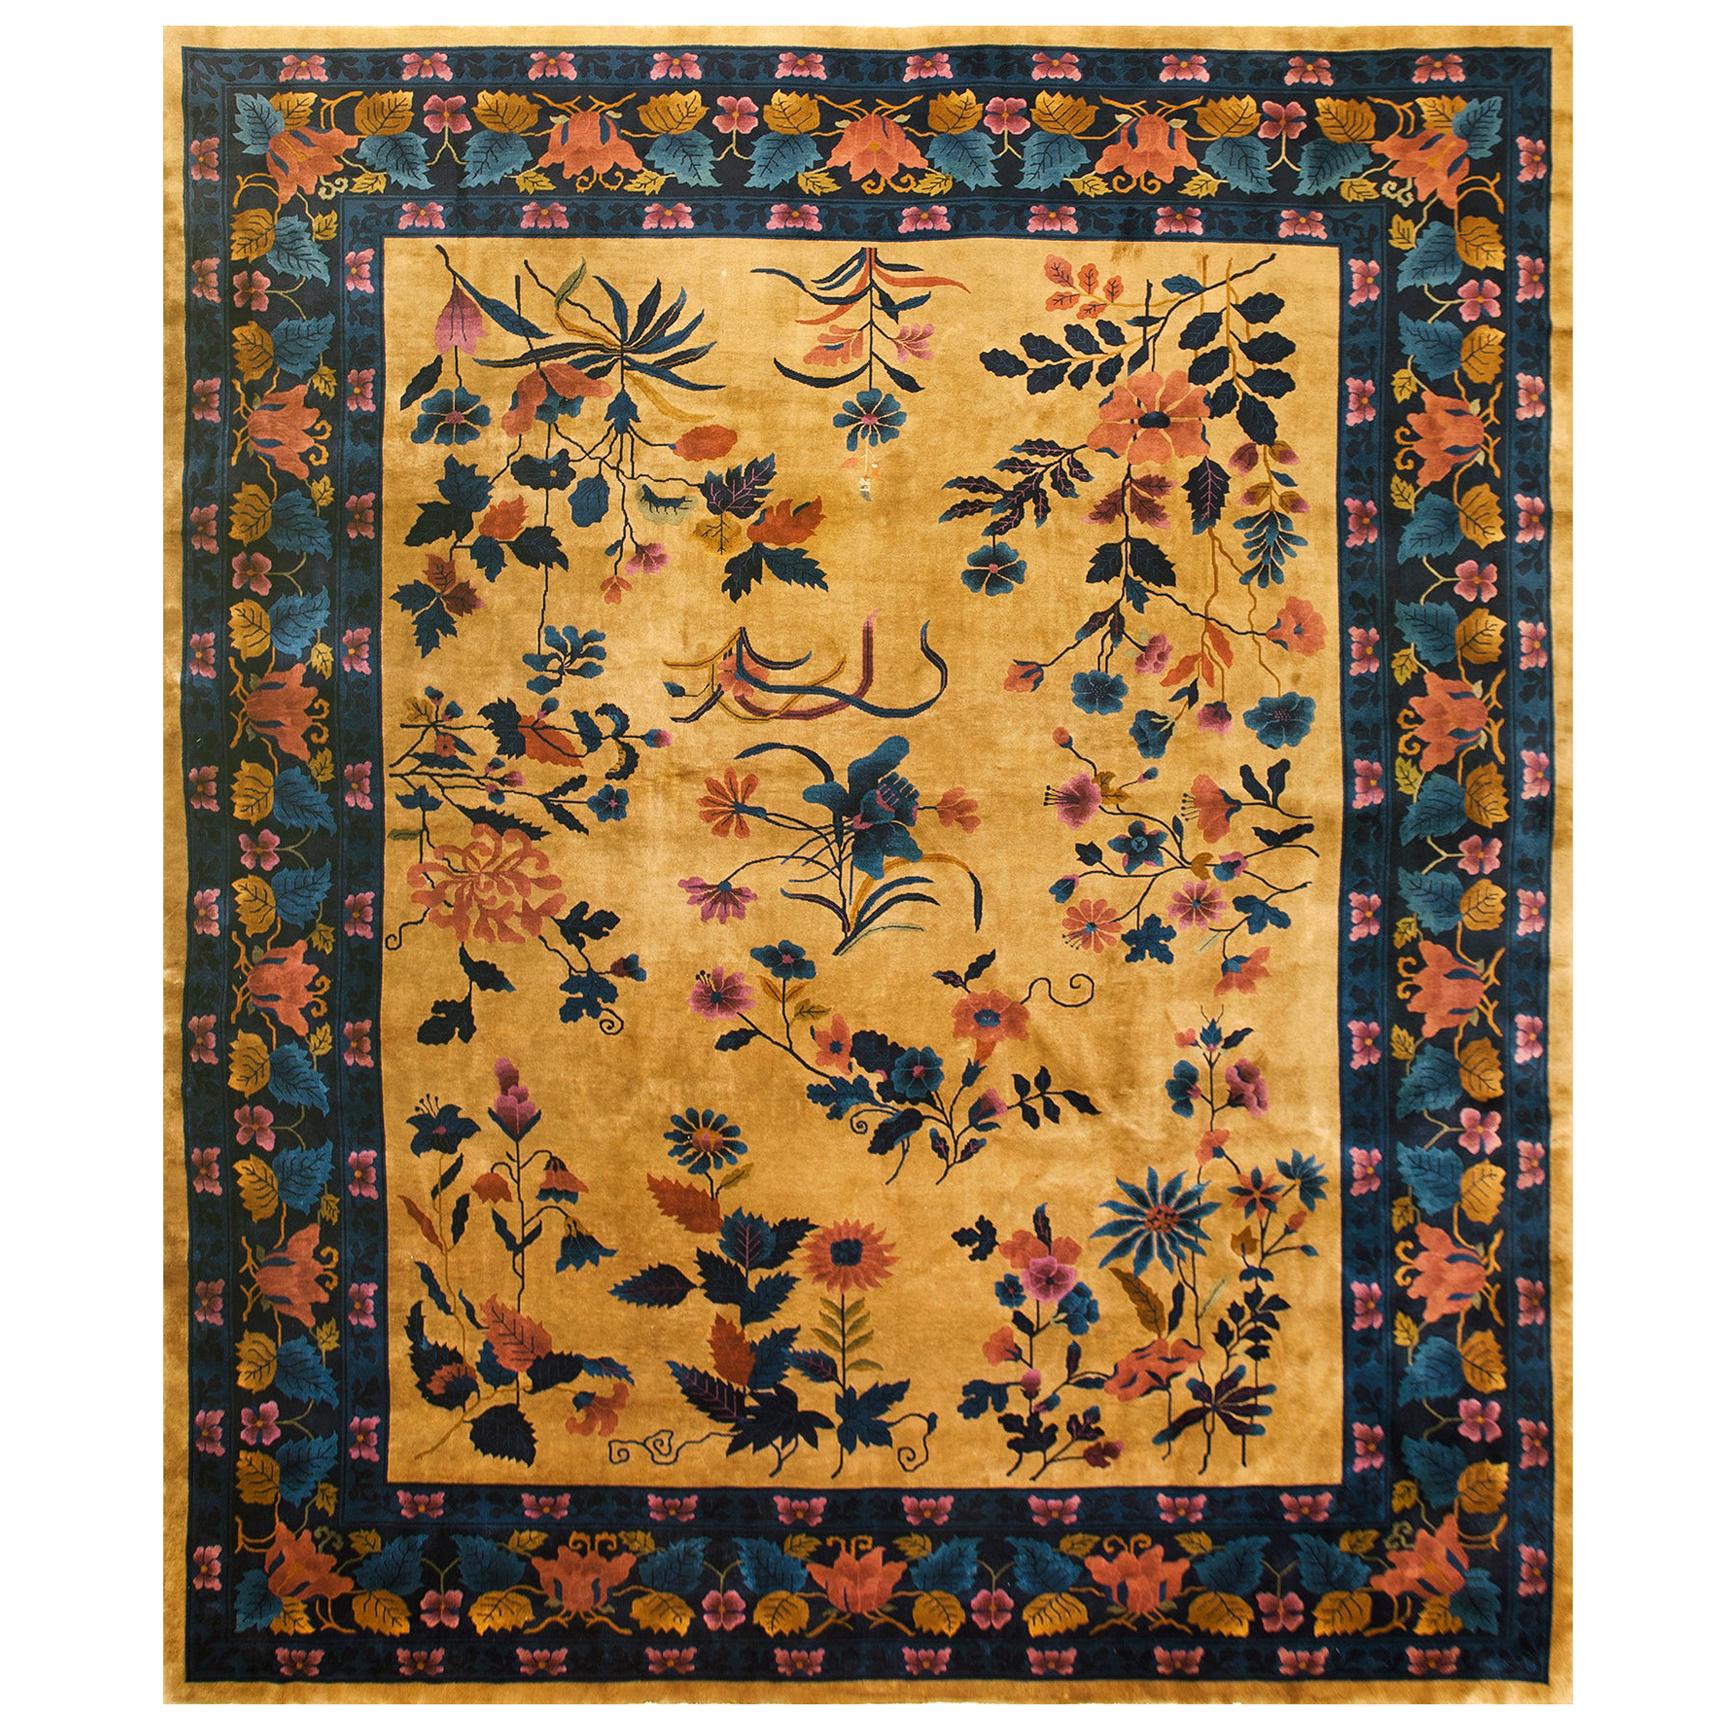 Chinesischer Art-déco-Teppich aus den 1920er Jahren ( 13' x 15'6" - 395 x 475 cm) 